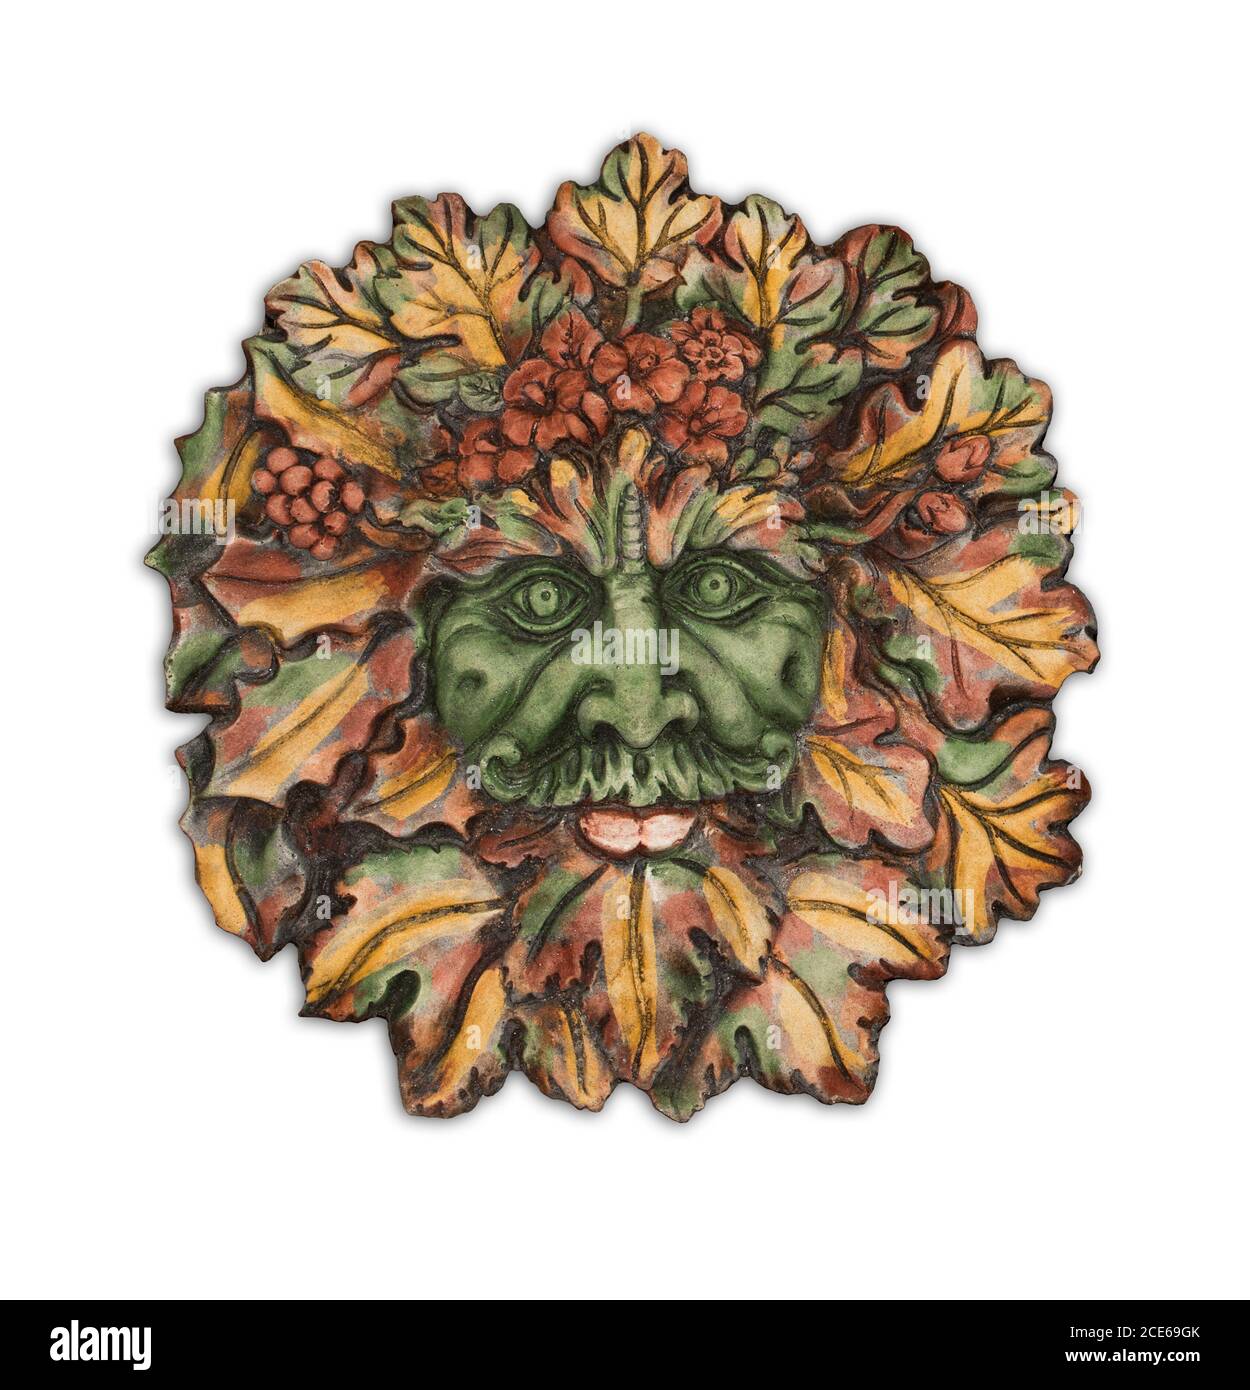 Art de jardin en béton très décoratif, face des feuilles d'automne de Green Man, esprit mythique britannique des forêts, sur fond blanc Banque D'Images